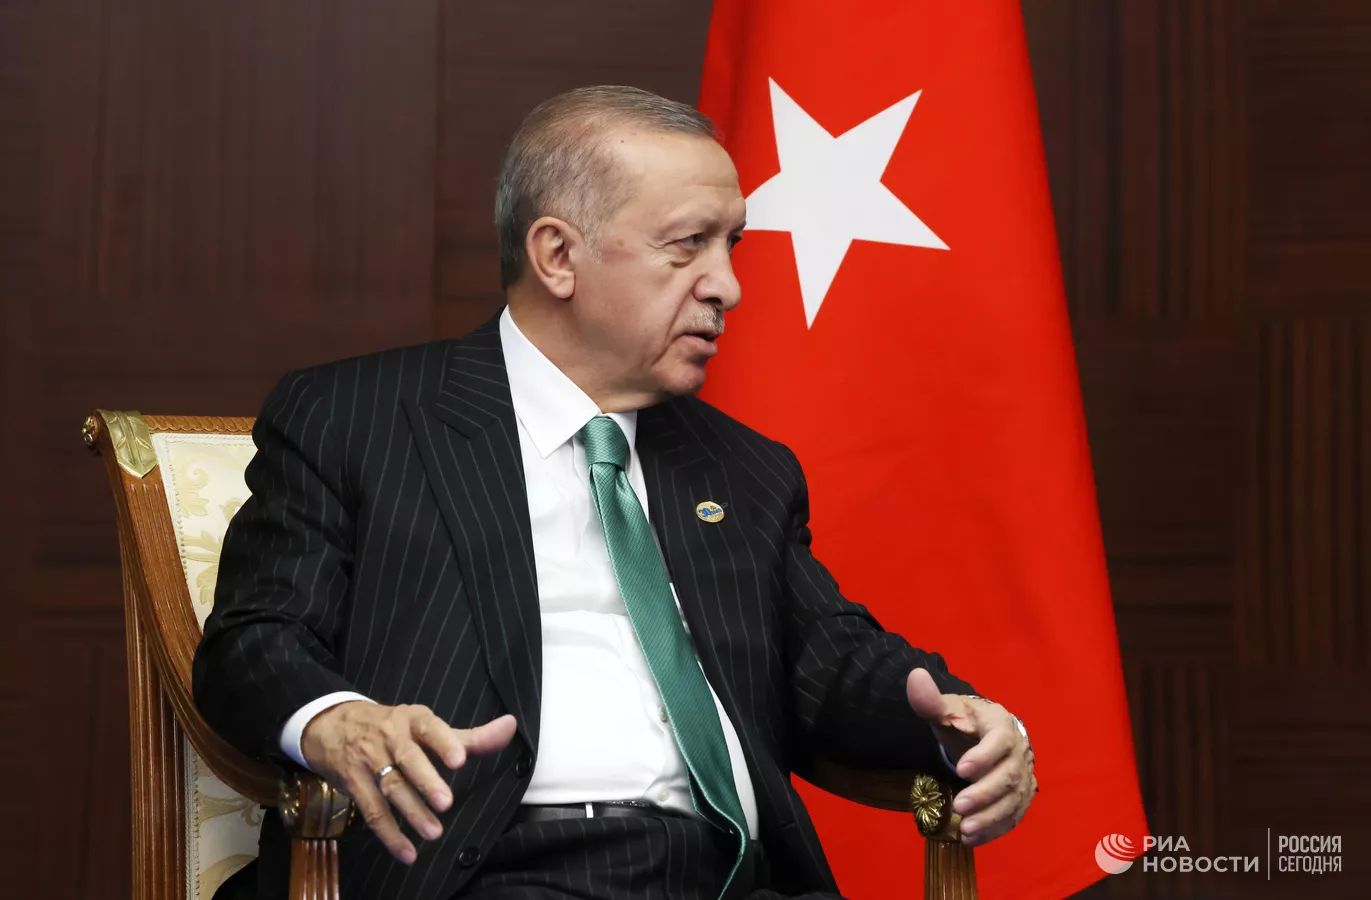 Թուրքիան և Ռուսաստանը կքննարկեն կարիքավորներին արտադրանքի մատակարարման հարցը․ Էրդողանը